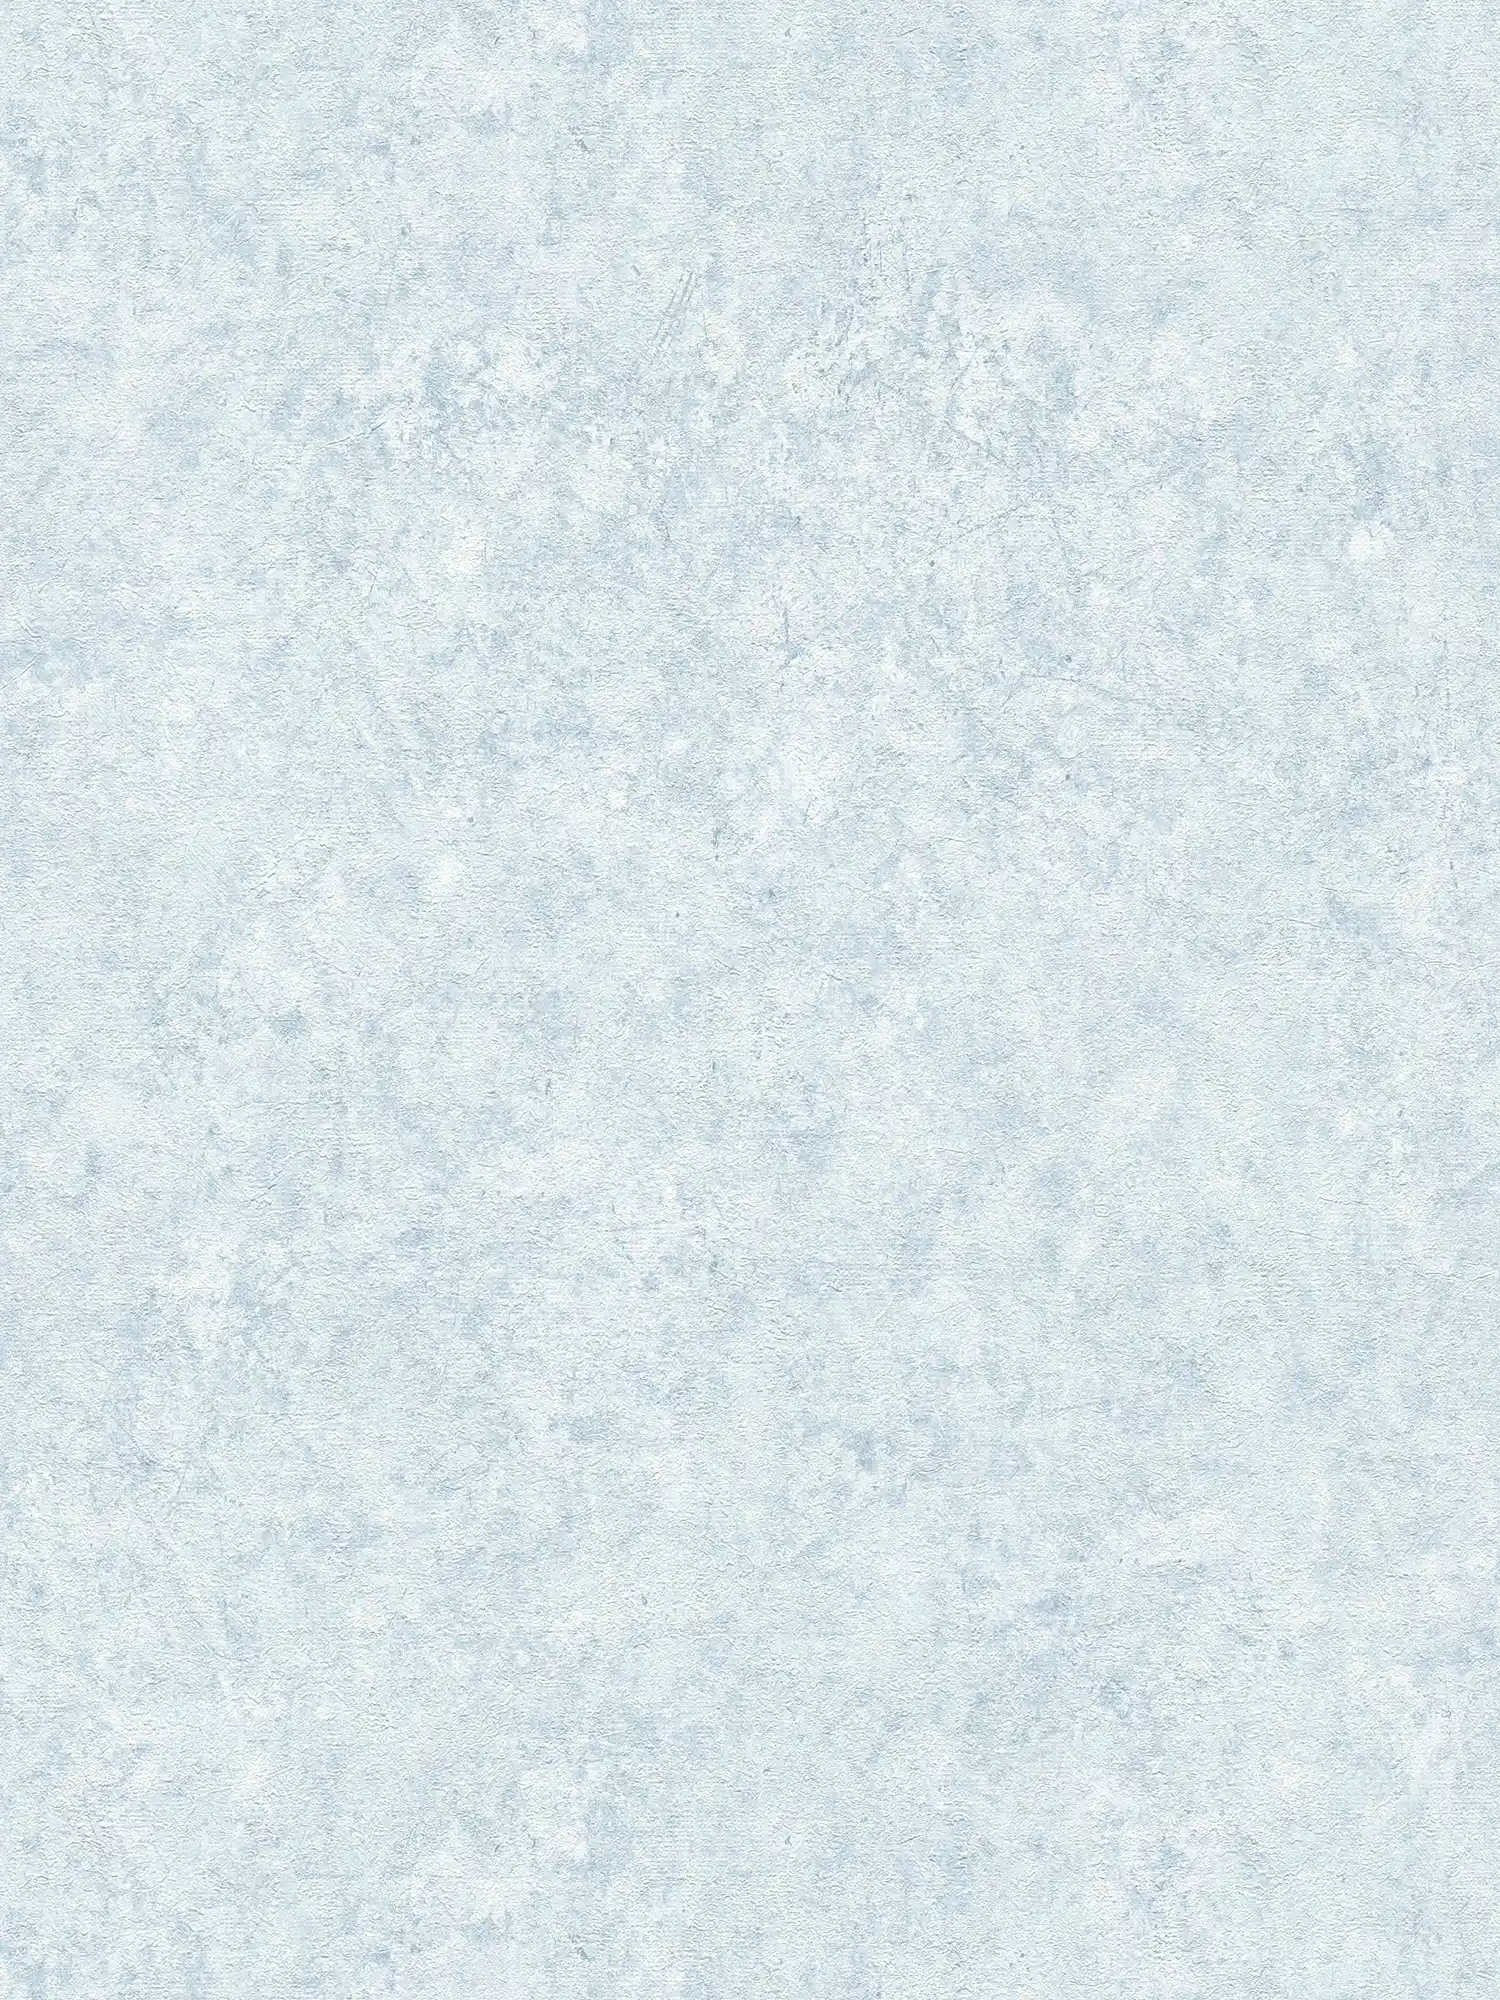 Plain textured wallpaper in a subtle colour - blue, white
